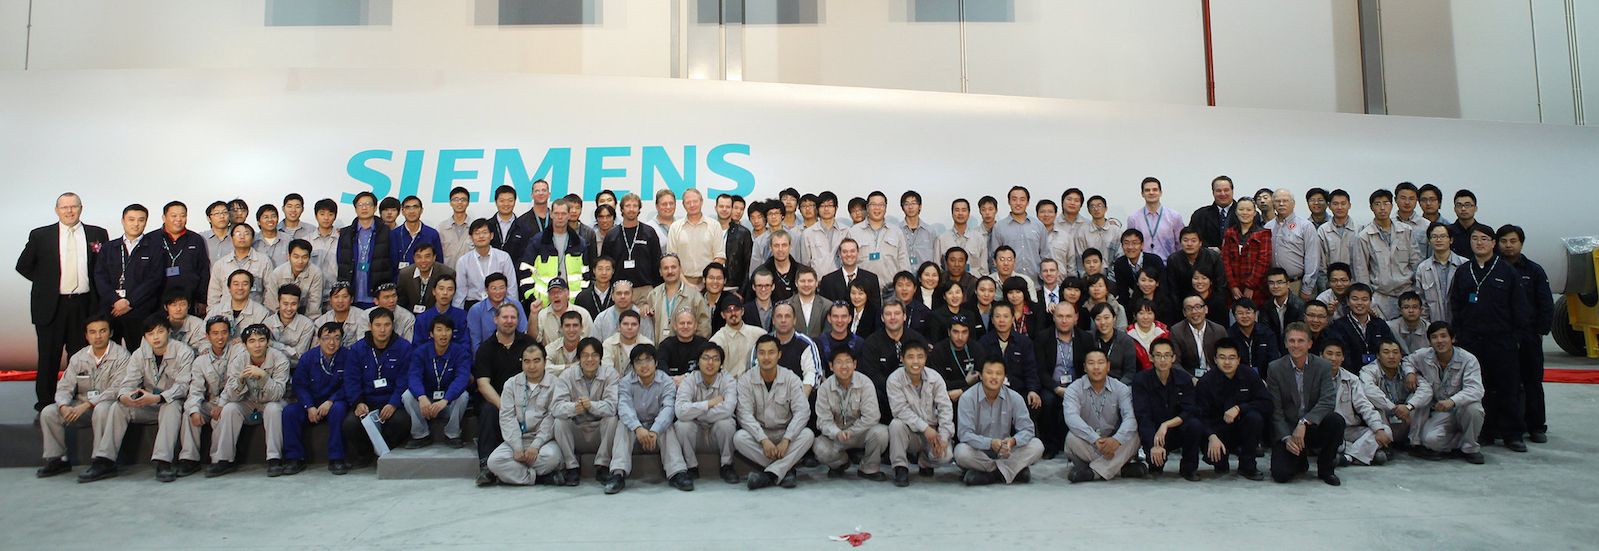 Does Siemens negotiate salary?